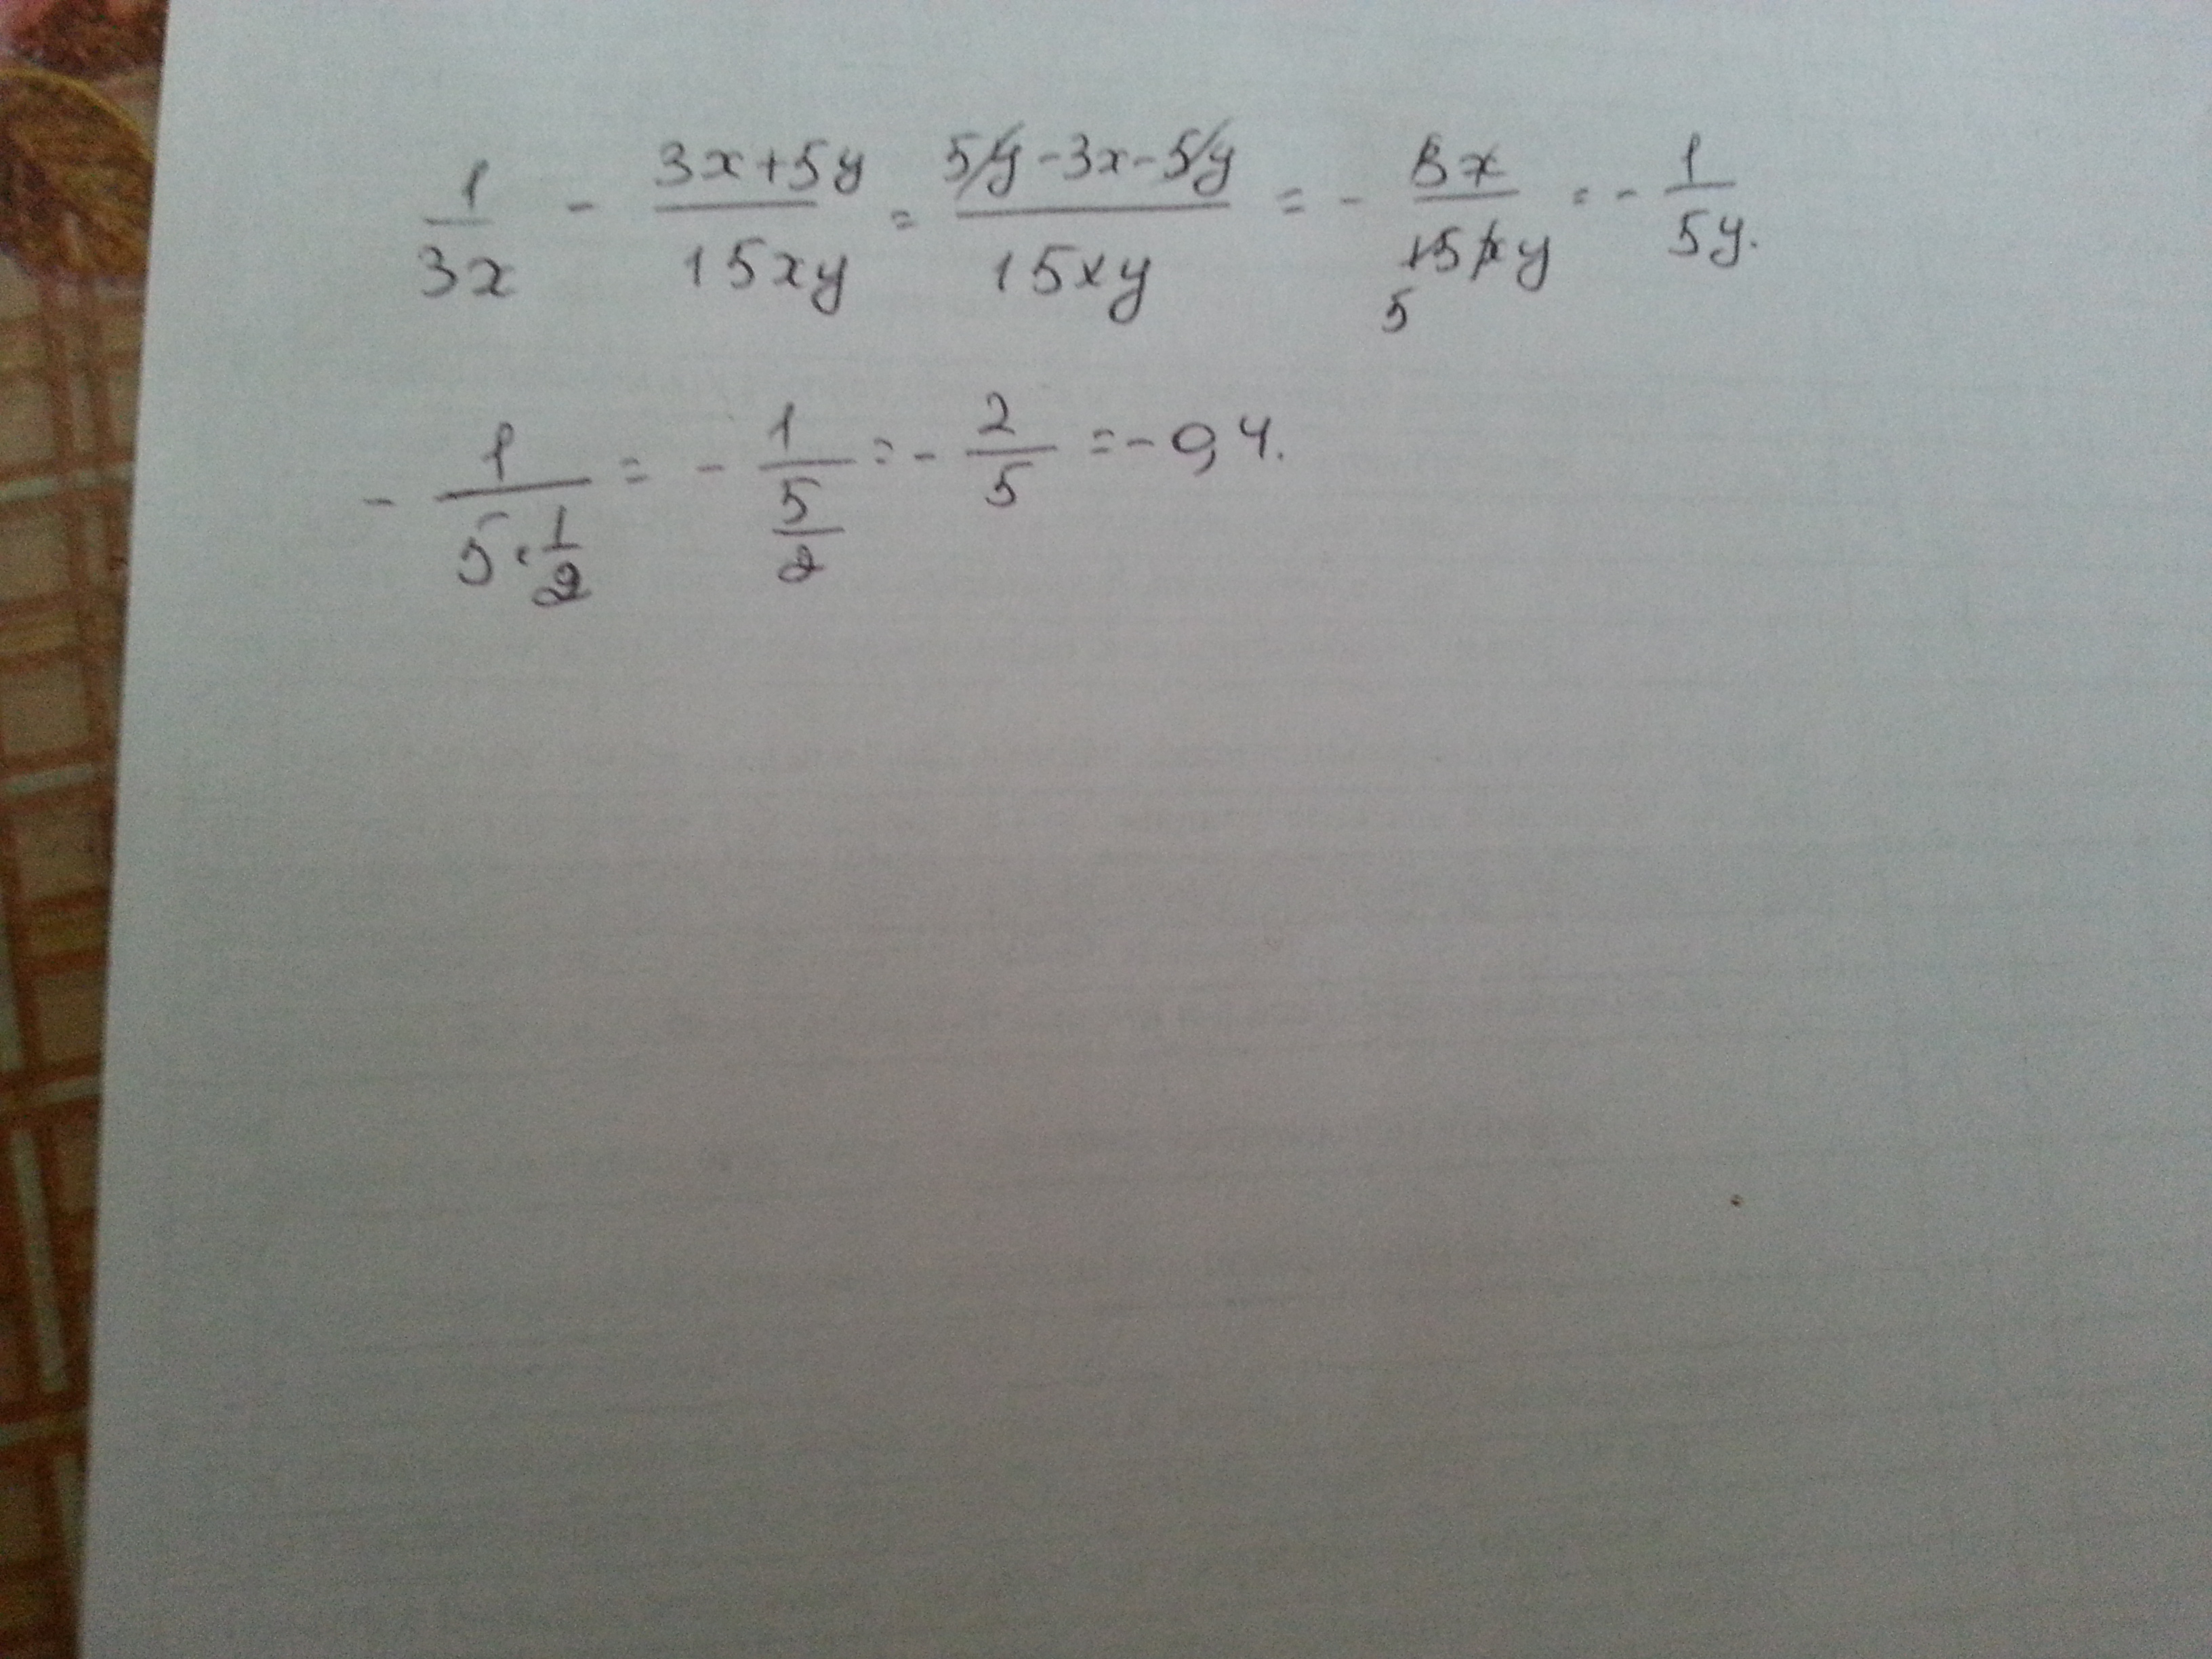 5x 2 45x 0. 1/3x-3x+5y/15xy при x корень из 45 y 1/2. Найдите значение выражения | минус 4| плюс |1 минус 3x| при x=2,4.. 1/3x 3x+5y/15xy. 1 3 5 3 15x y x XY + − при x = 45 , 12 y = ..